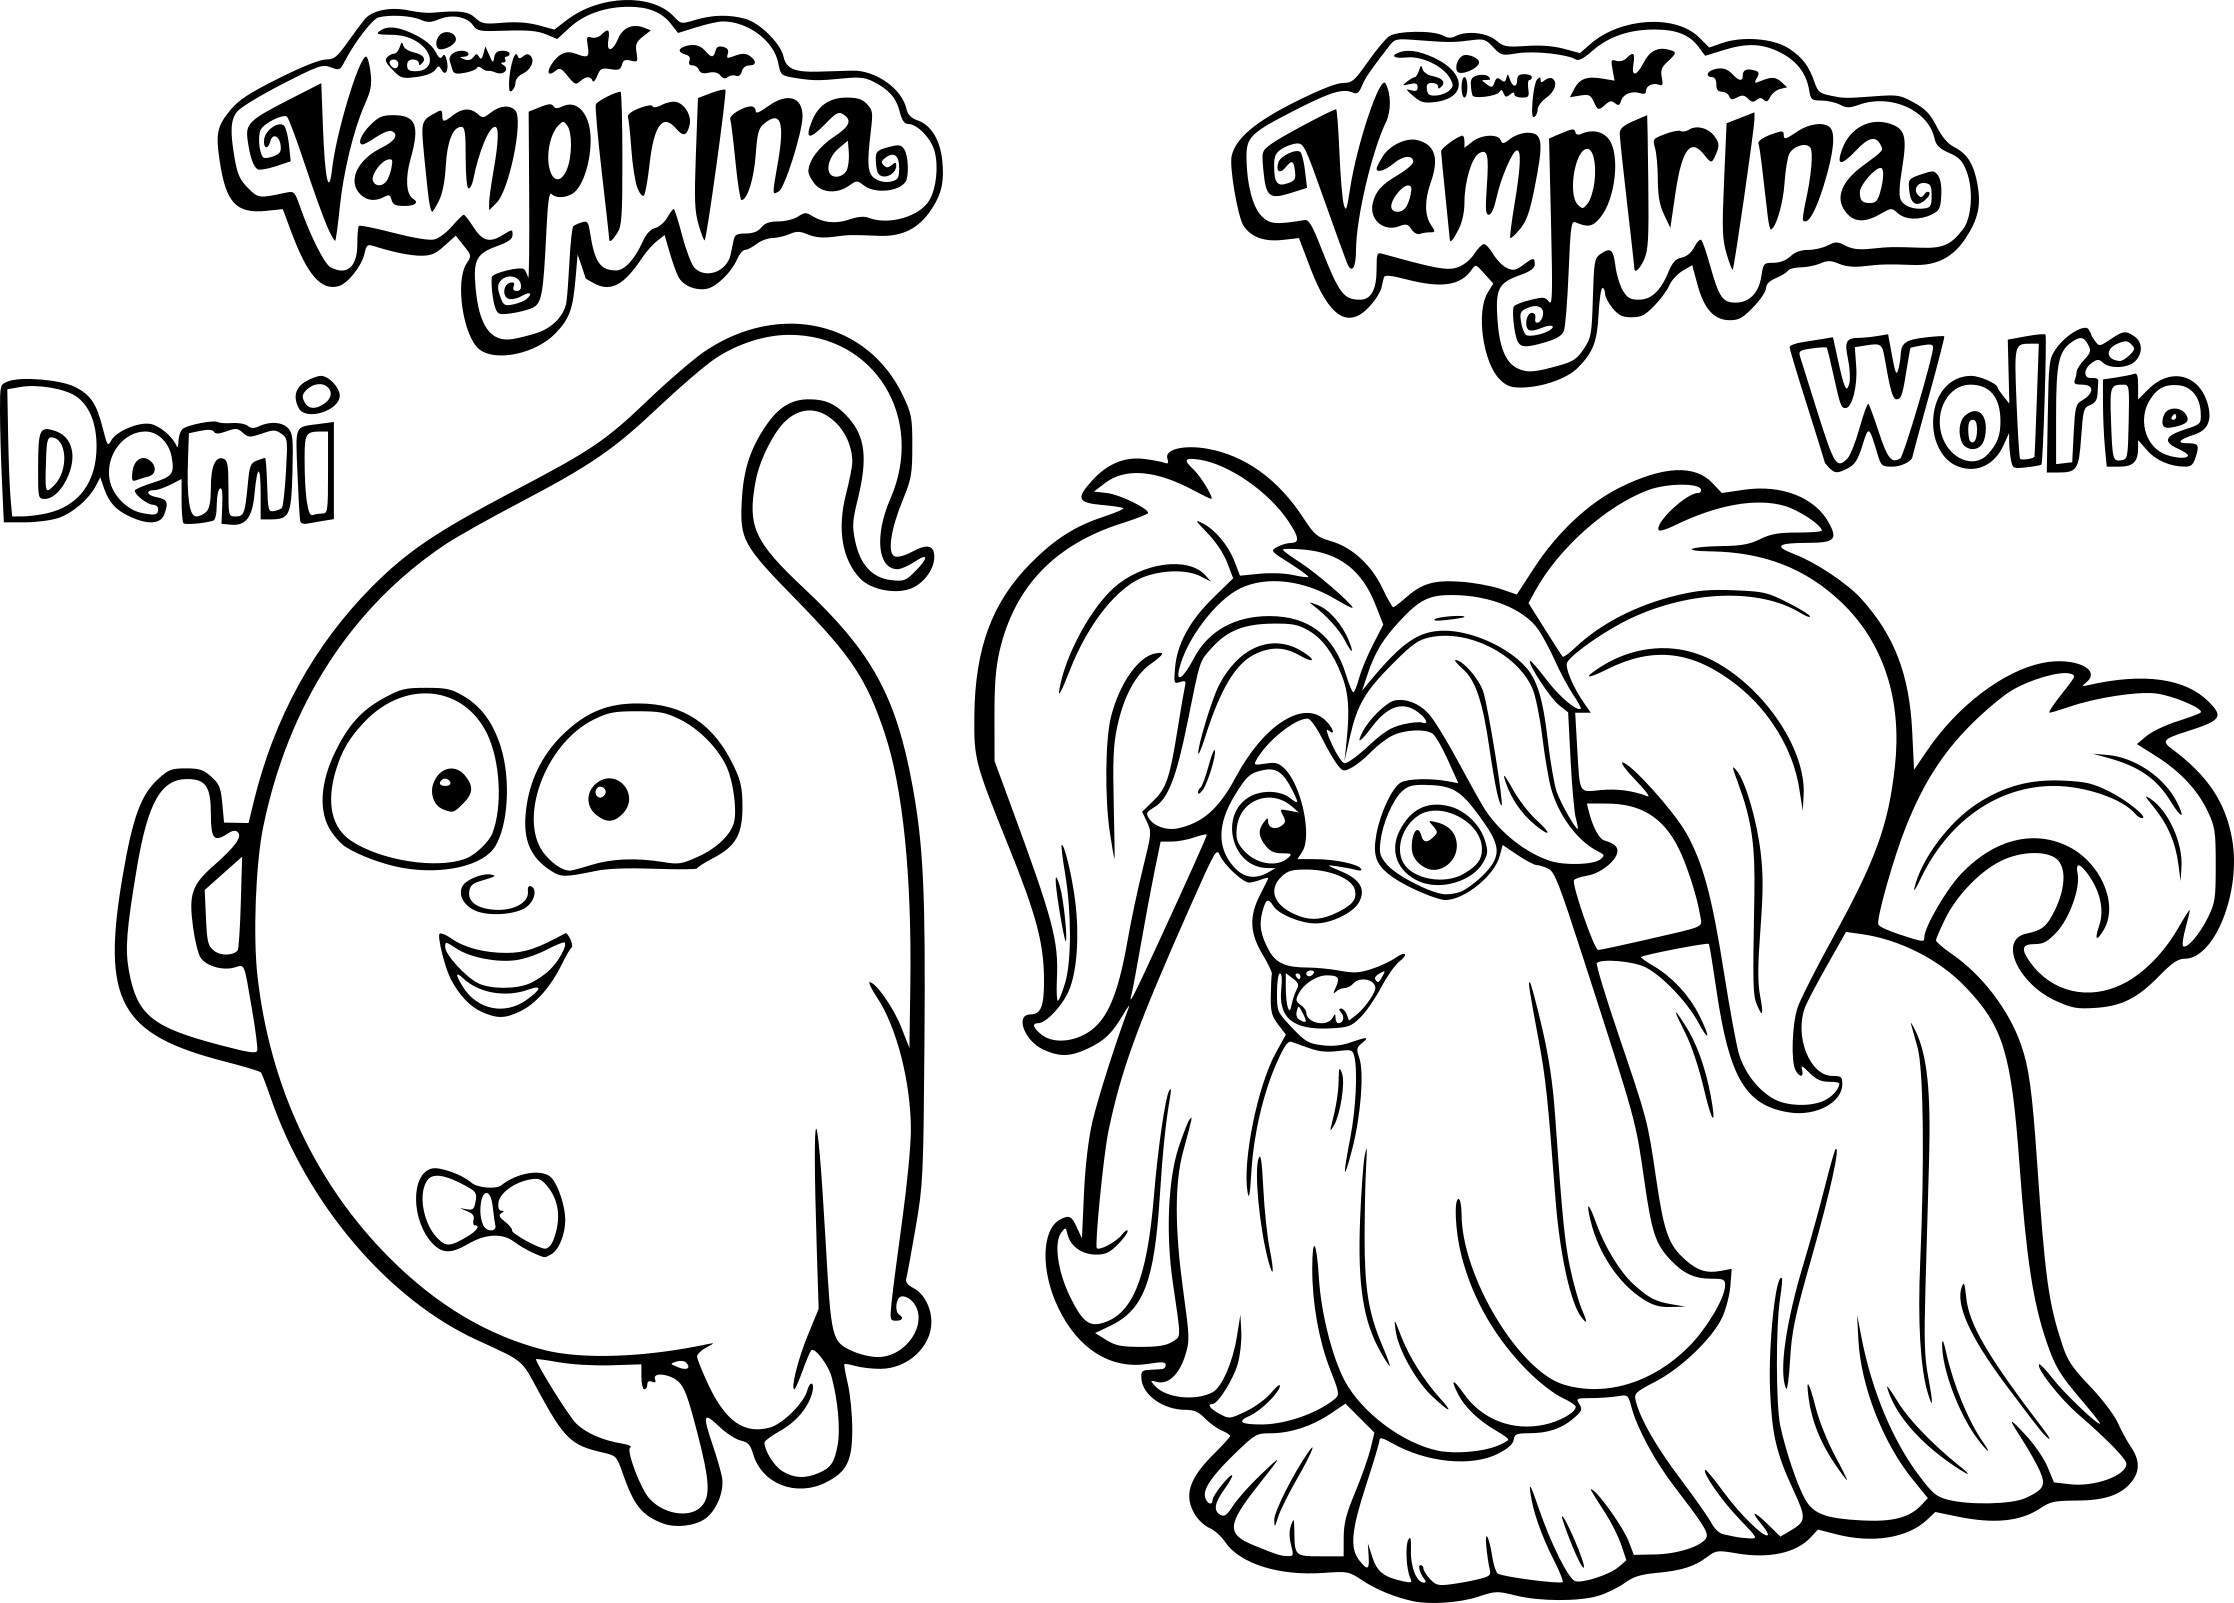 Vampirinas Friends coloring page